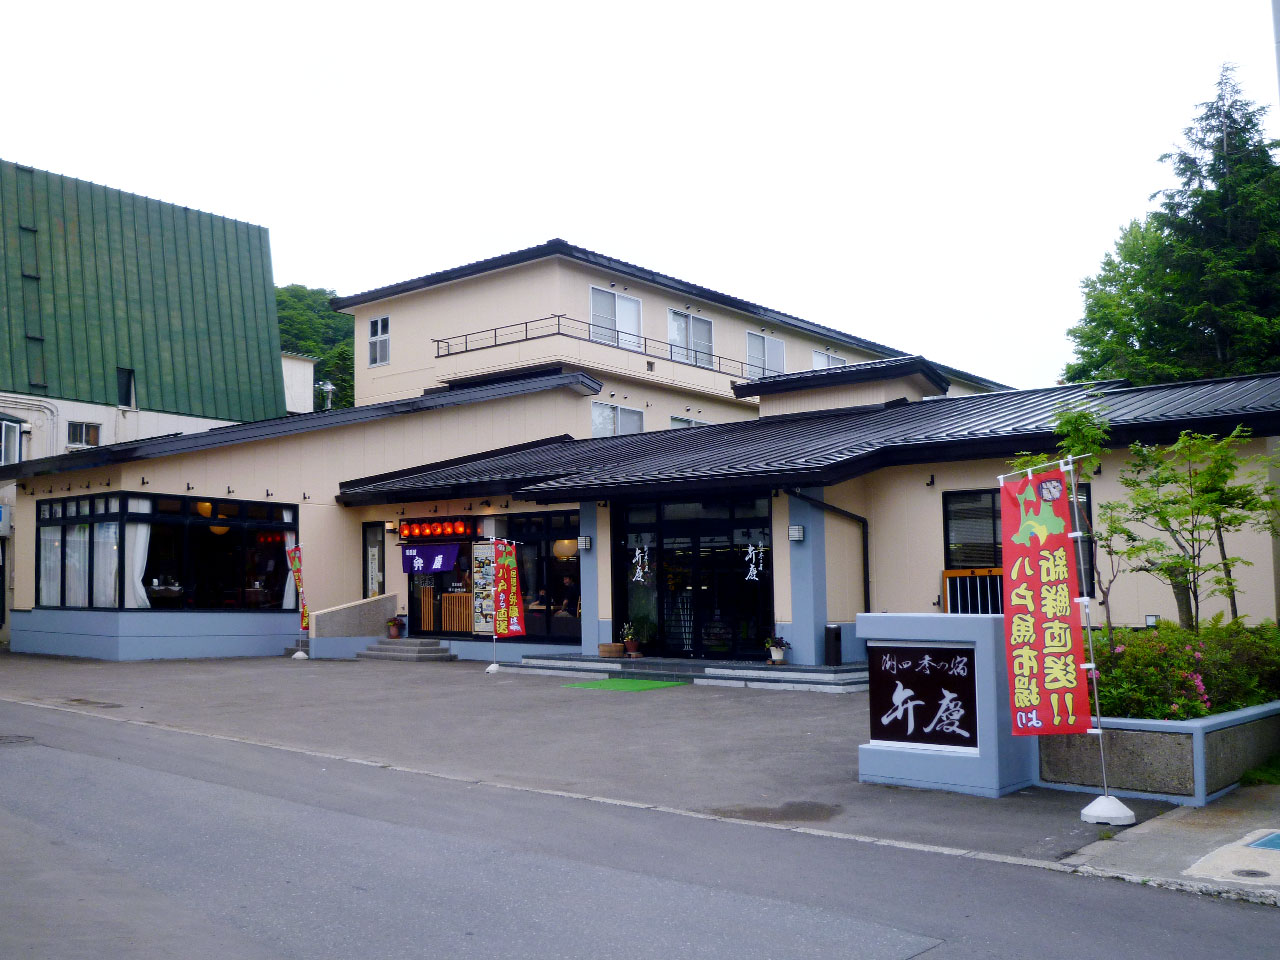 イトムカの入り江に行くツアーに参加したいと計画中。十和田神社から1時間以内のホテル